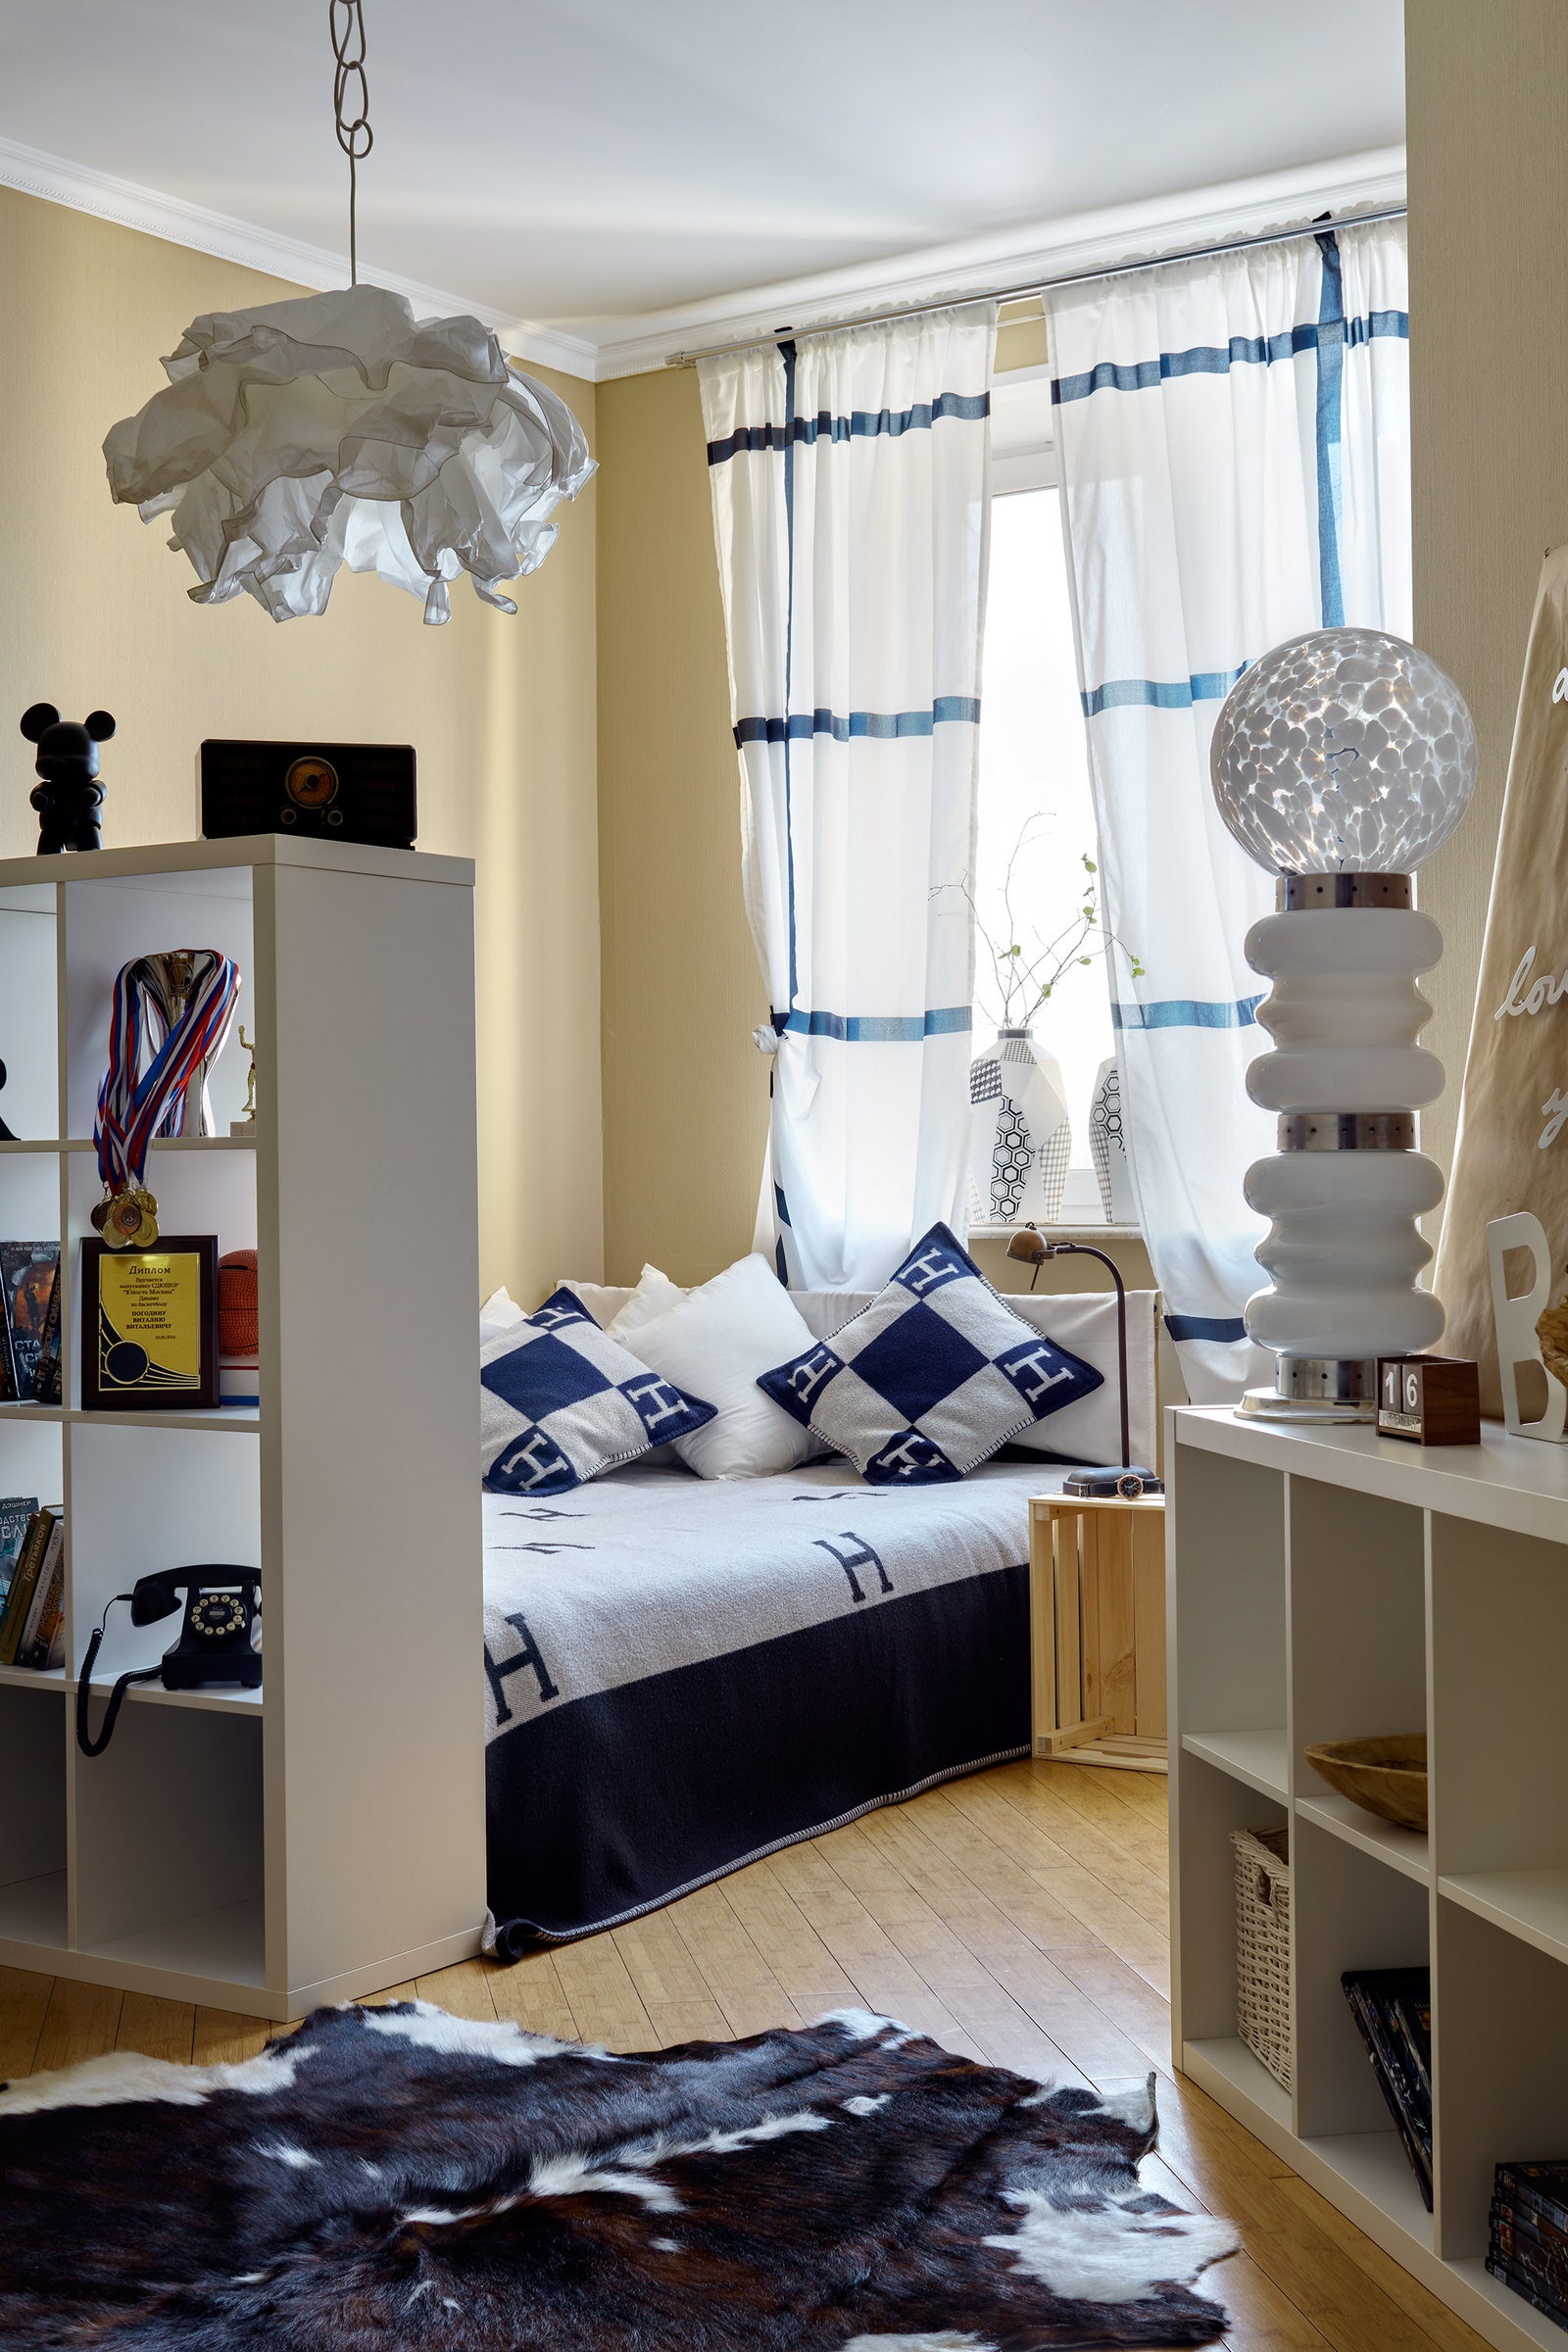 Спальня делится на две части с помощью стеллажа из IKEA. Вазы на окне из шоурума “Детали”.